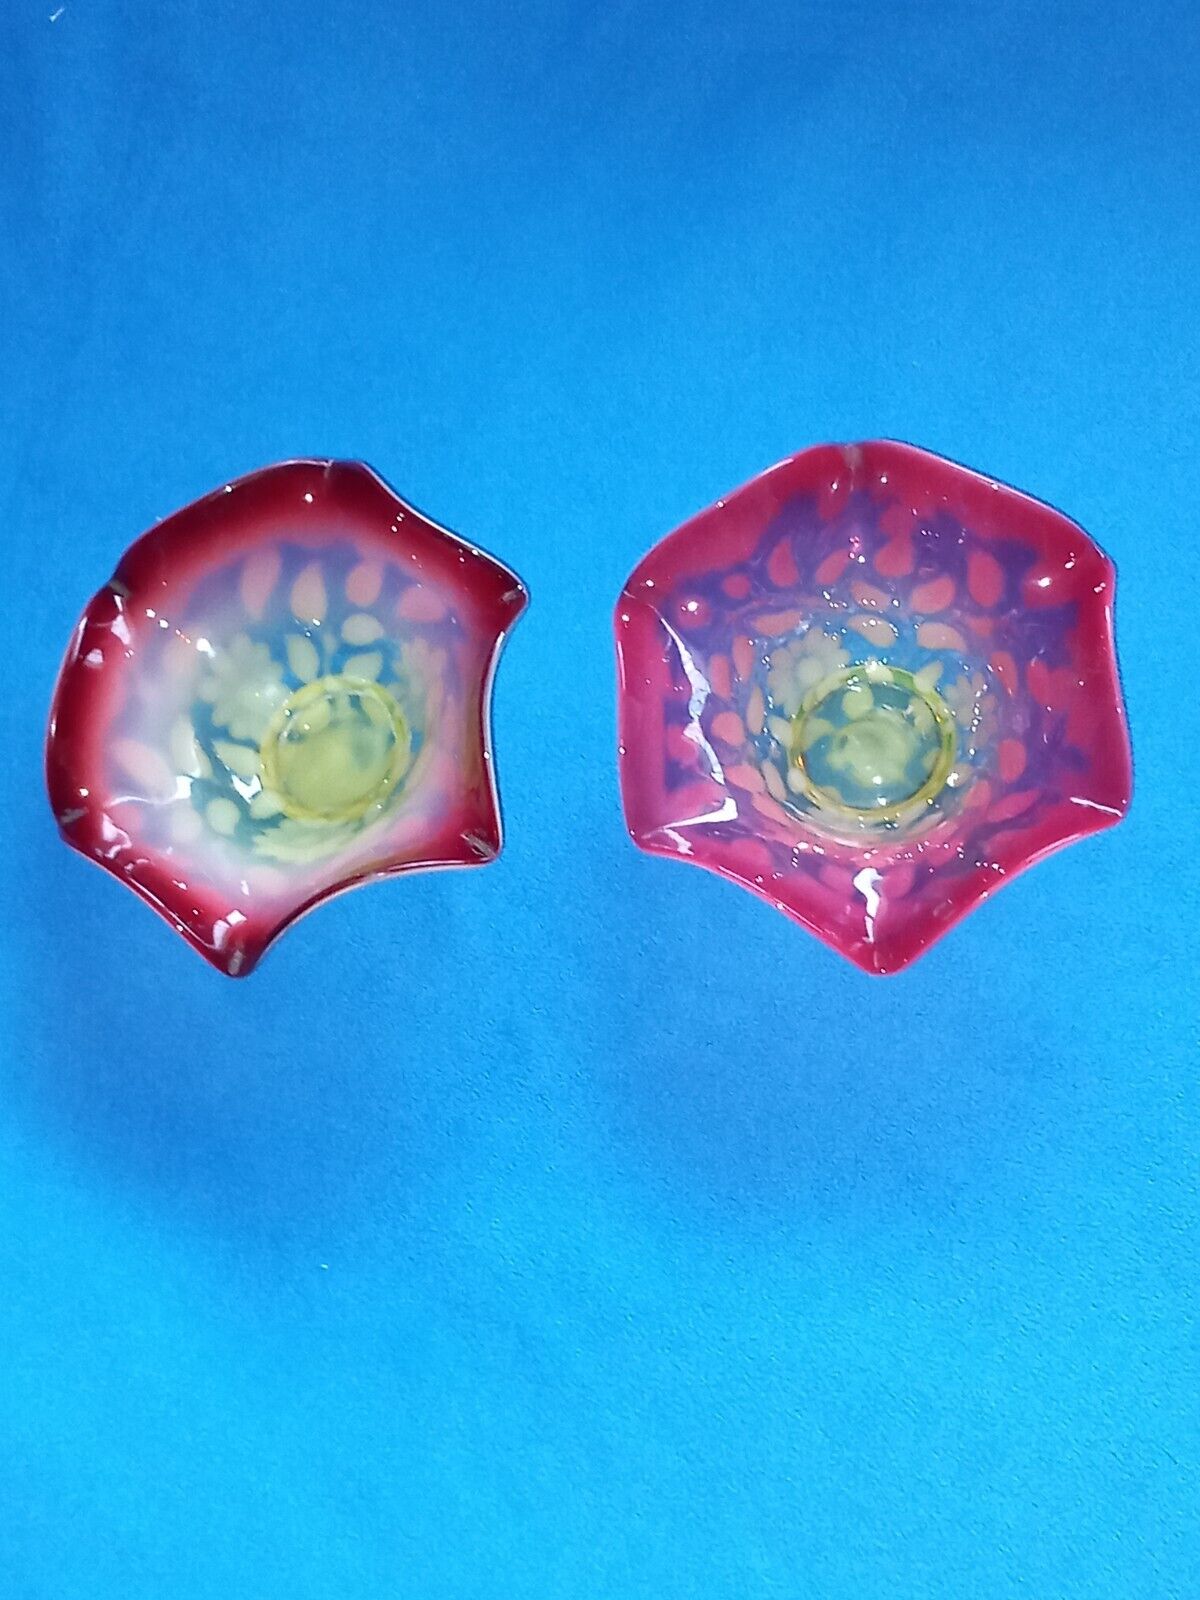 2 pcs Antique Cranberry Uranium Vaseline Glass Sugar Ice bowl Opalescent Flower